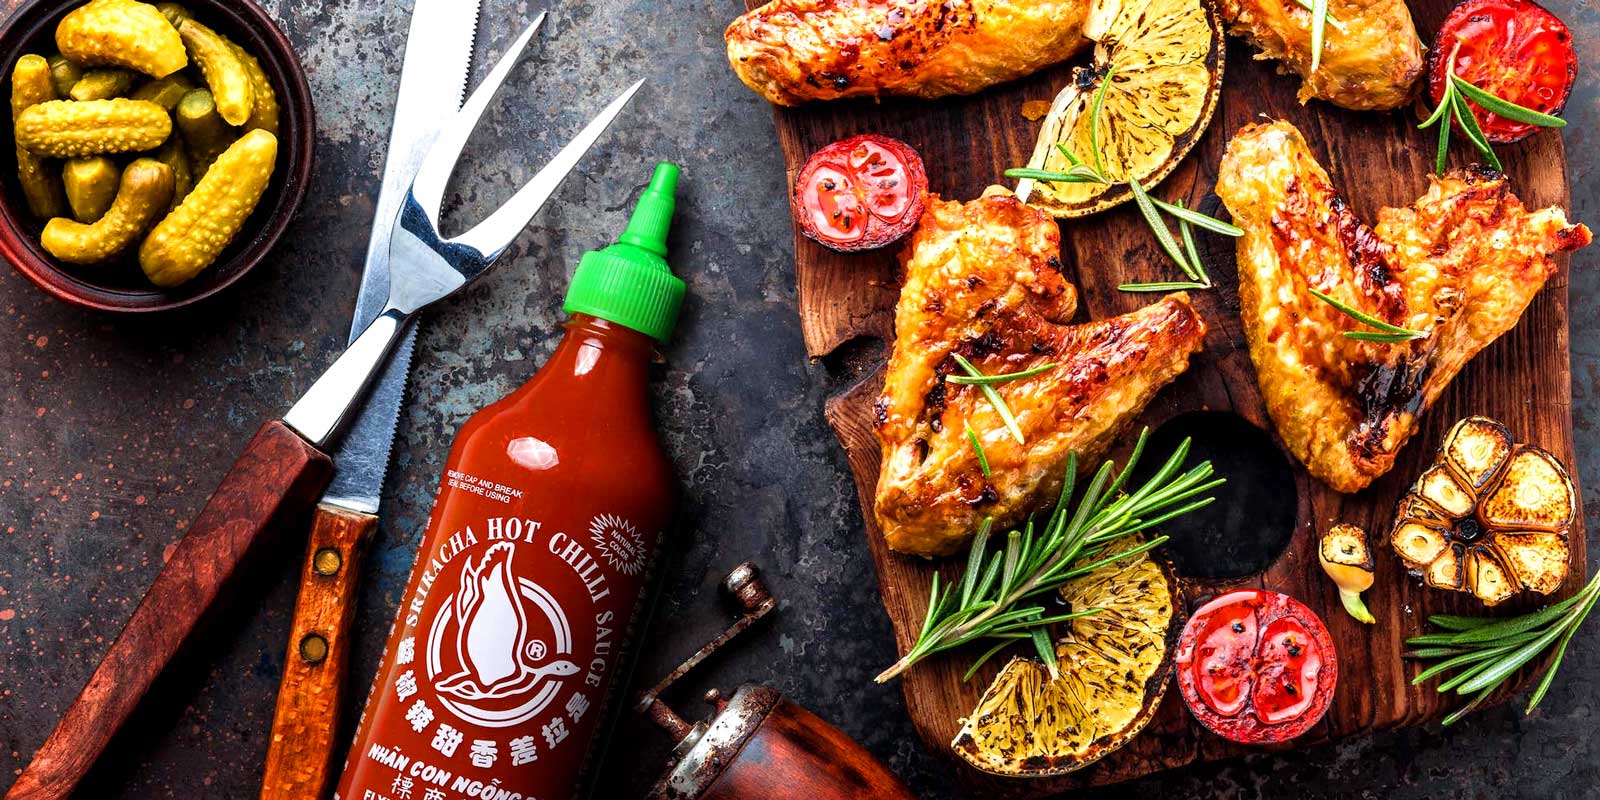 Ucan Kaz`dan Sriracha soslari 1999 yilinda, sicak soslarin standardini yukseltmek ve lezzet tutkunlarina her turlu ikrami tamamlayacak maksimum lezzet seviyesini sunmak amaciyla premium Tay sos markamiz Flying Goose piyasaya suruldu.